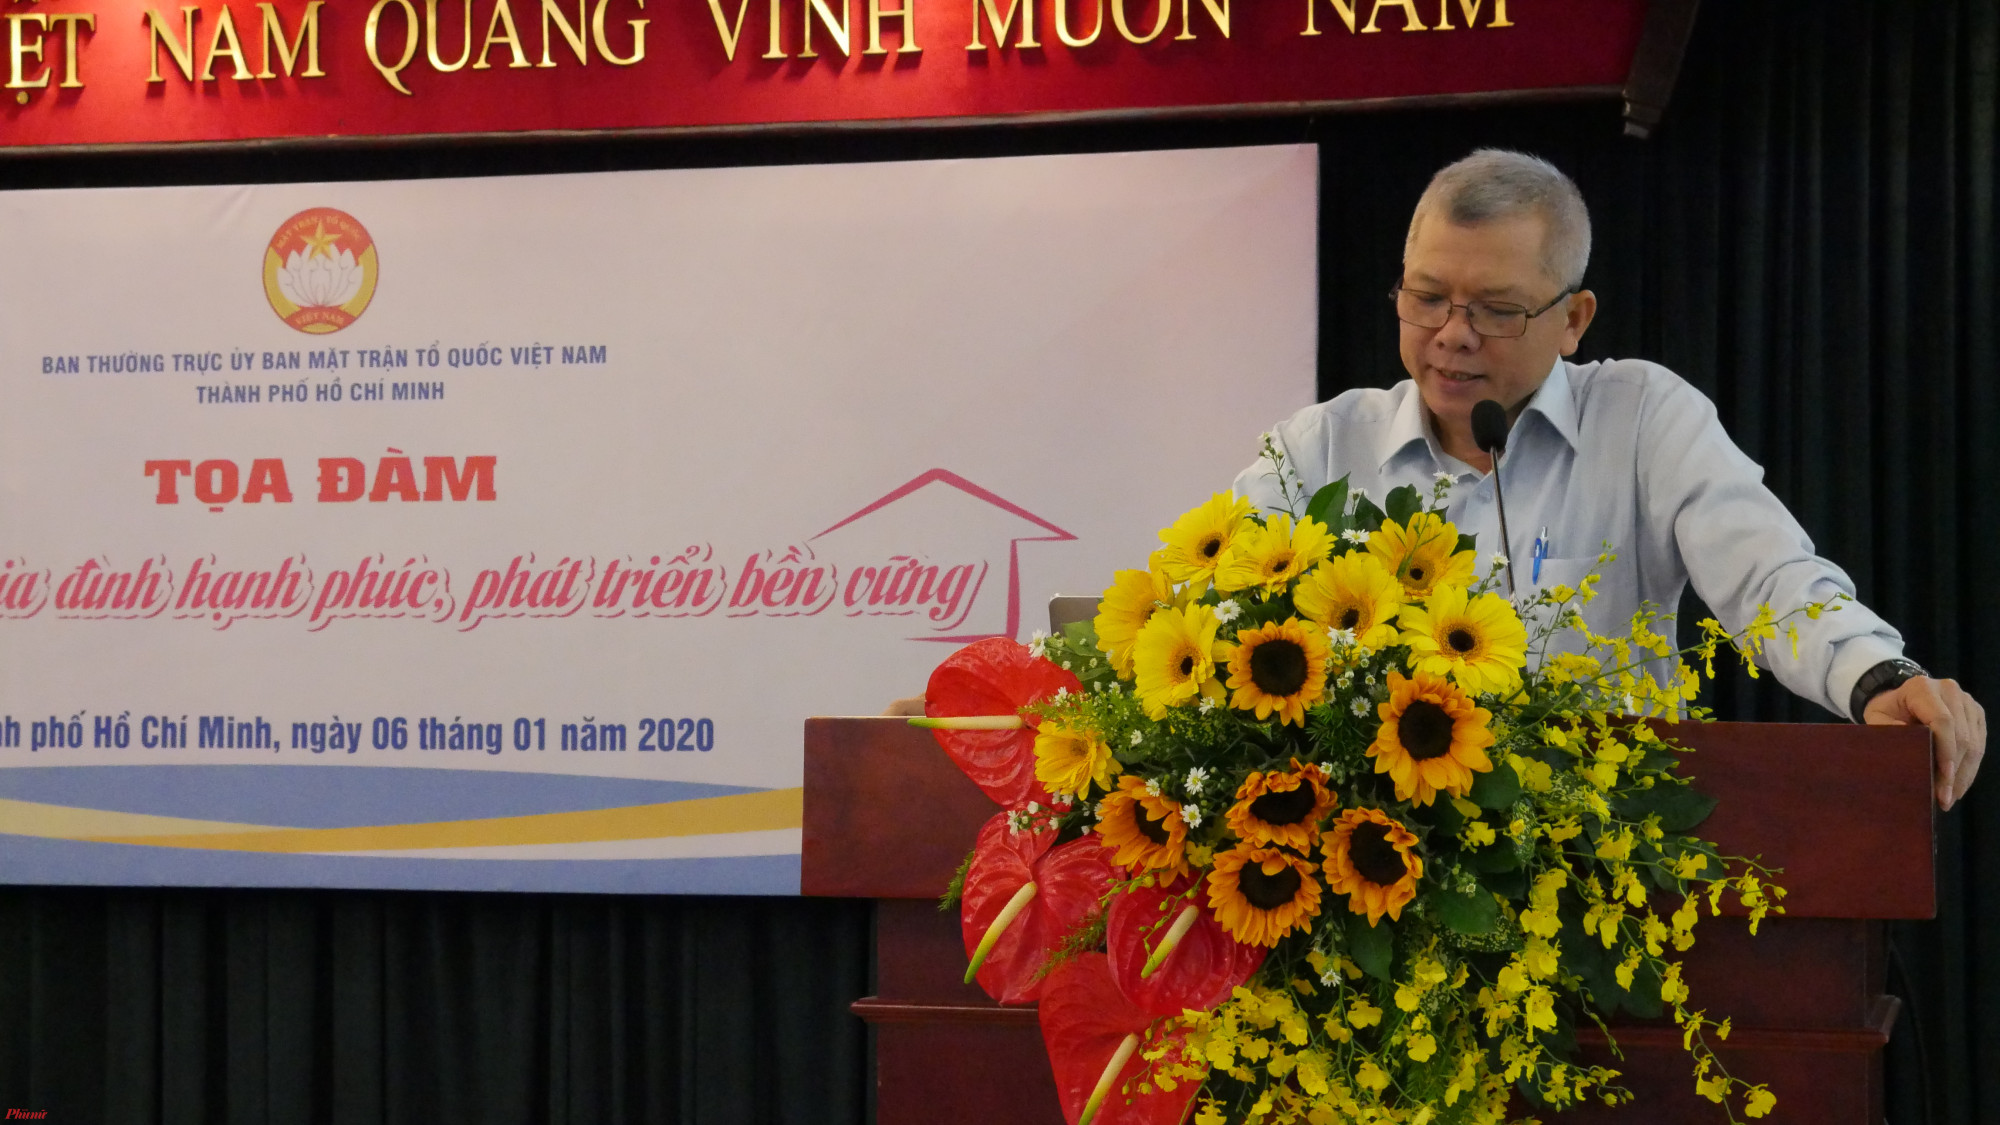 Ông Nguyễn Văn Trình - PGS.TS – Phó Viện trưởng Viện nghiên cứu phát triển TP.HCM : Việc tổ chức gia đình và giáo dục tốt sẽ tác động lớn đến việc hình thành nhân cách của trẻ